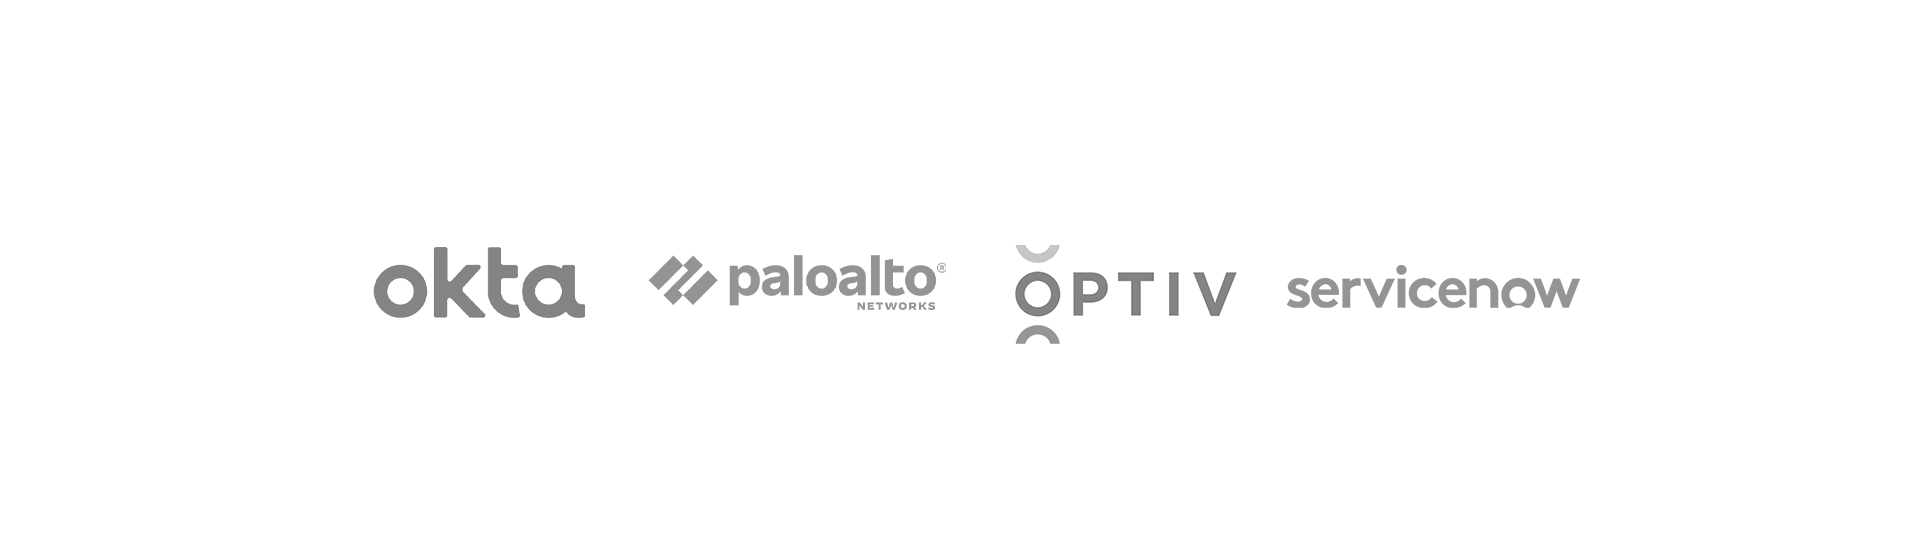 SOFTwarfare Partner Logos